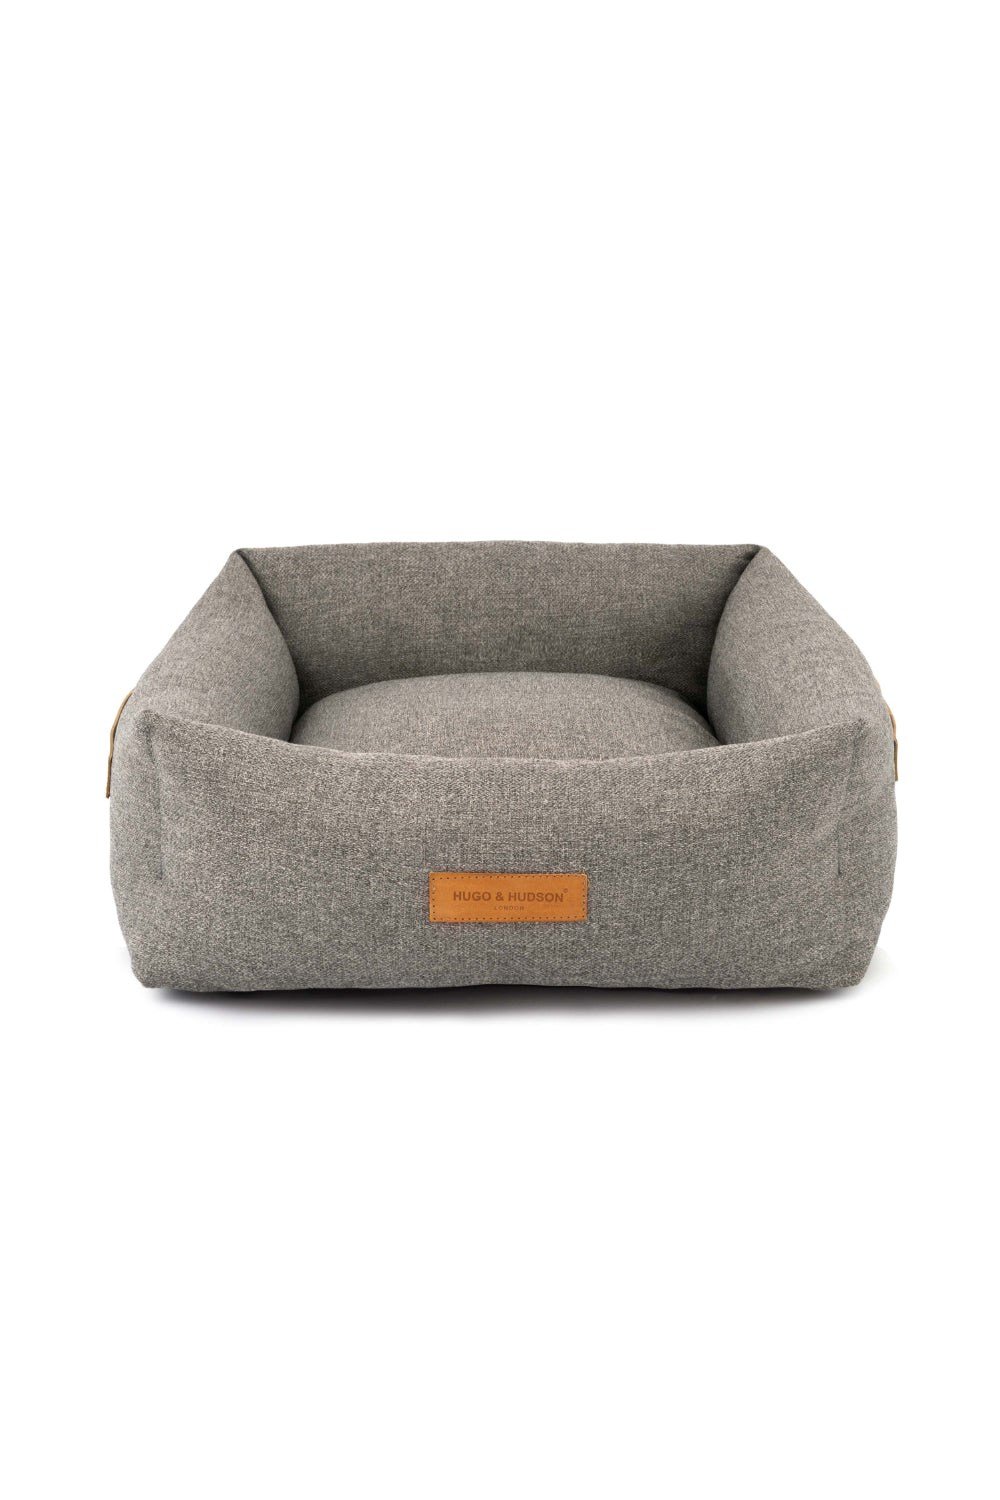 Luxury Pet Dog Bed Basket -